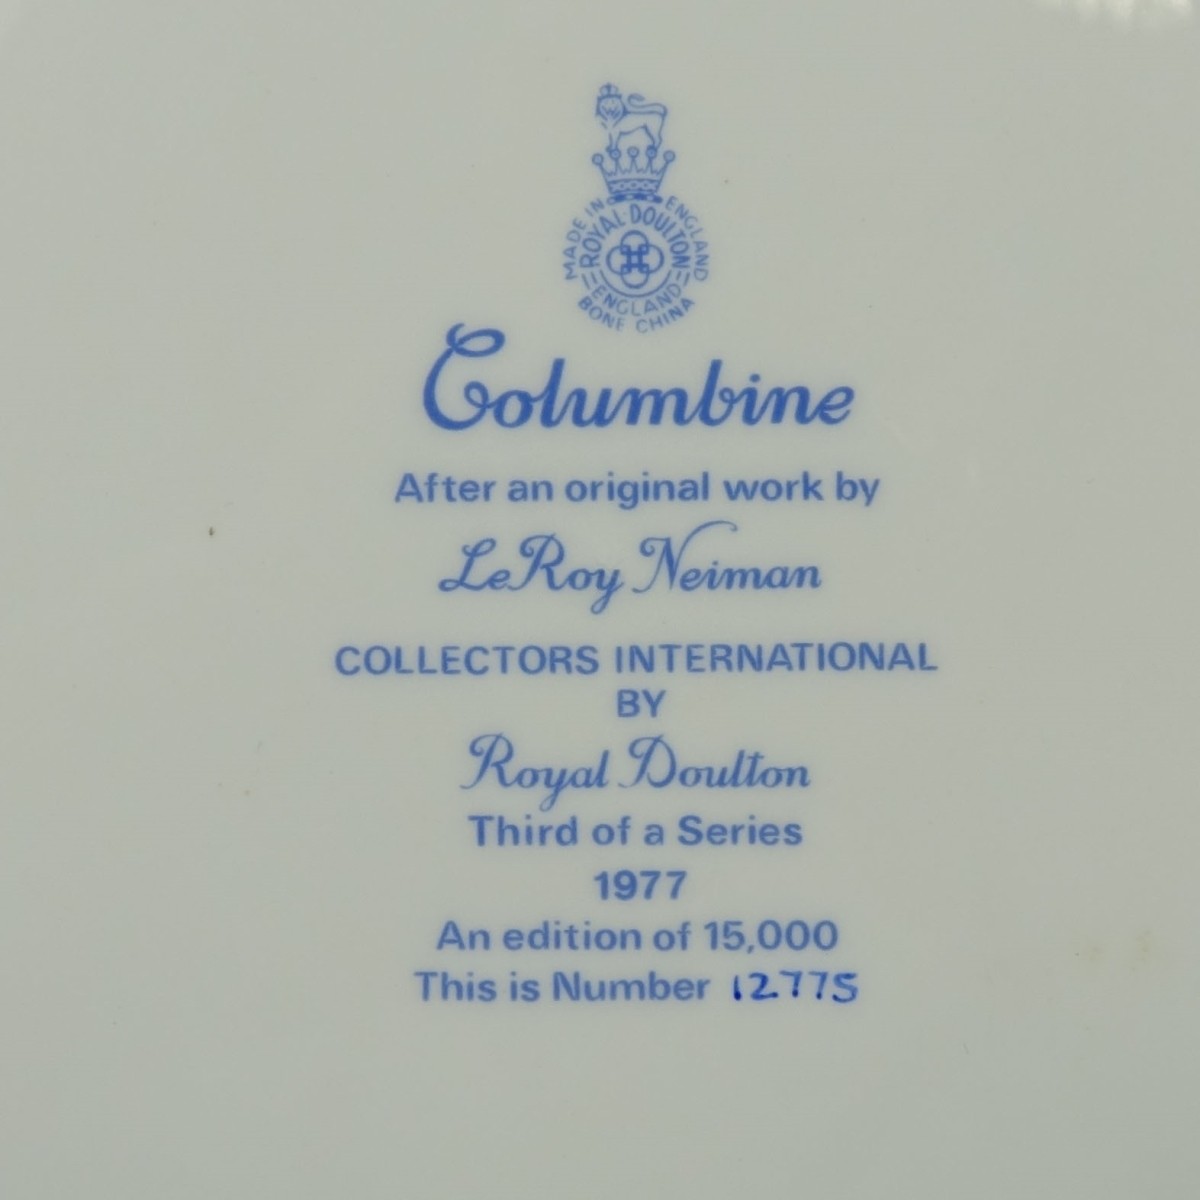 Royal Doulton Plates